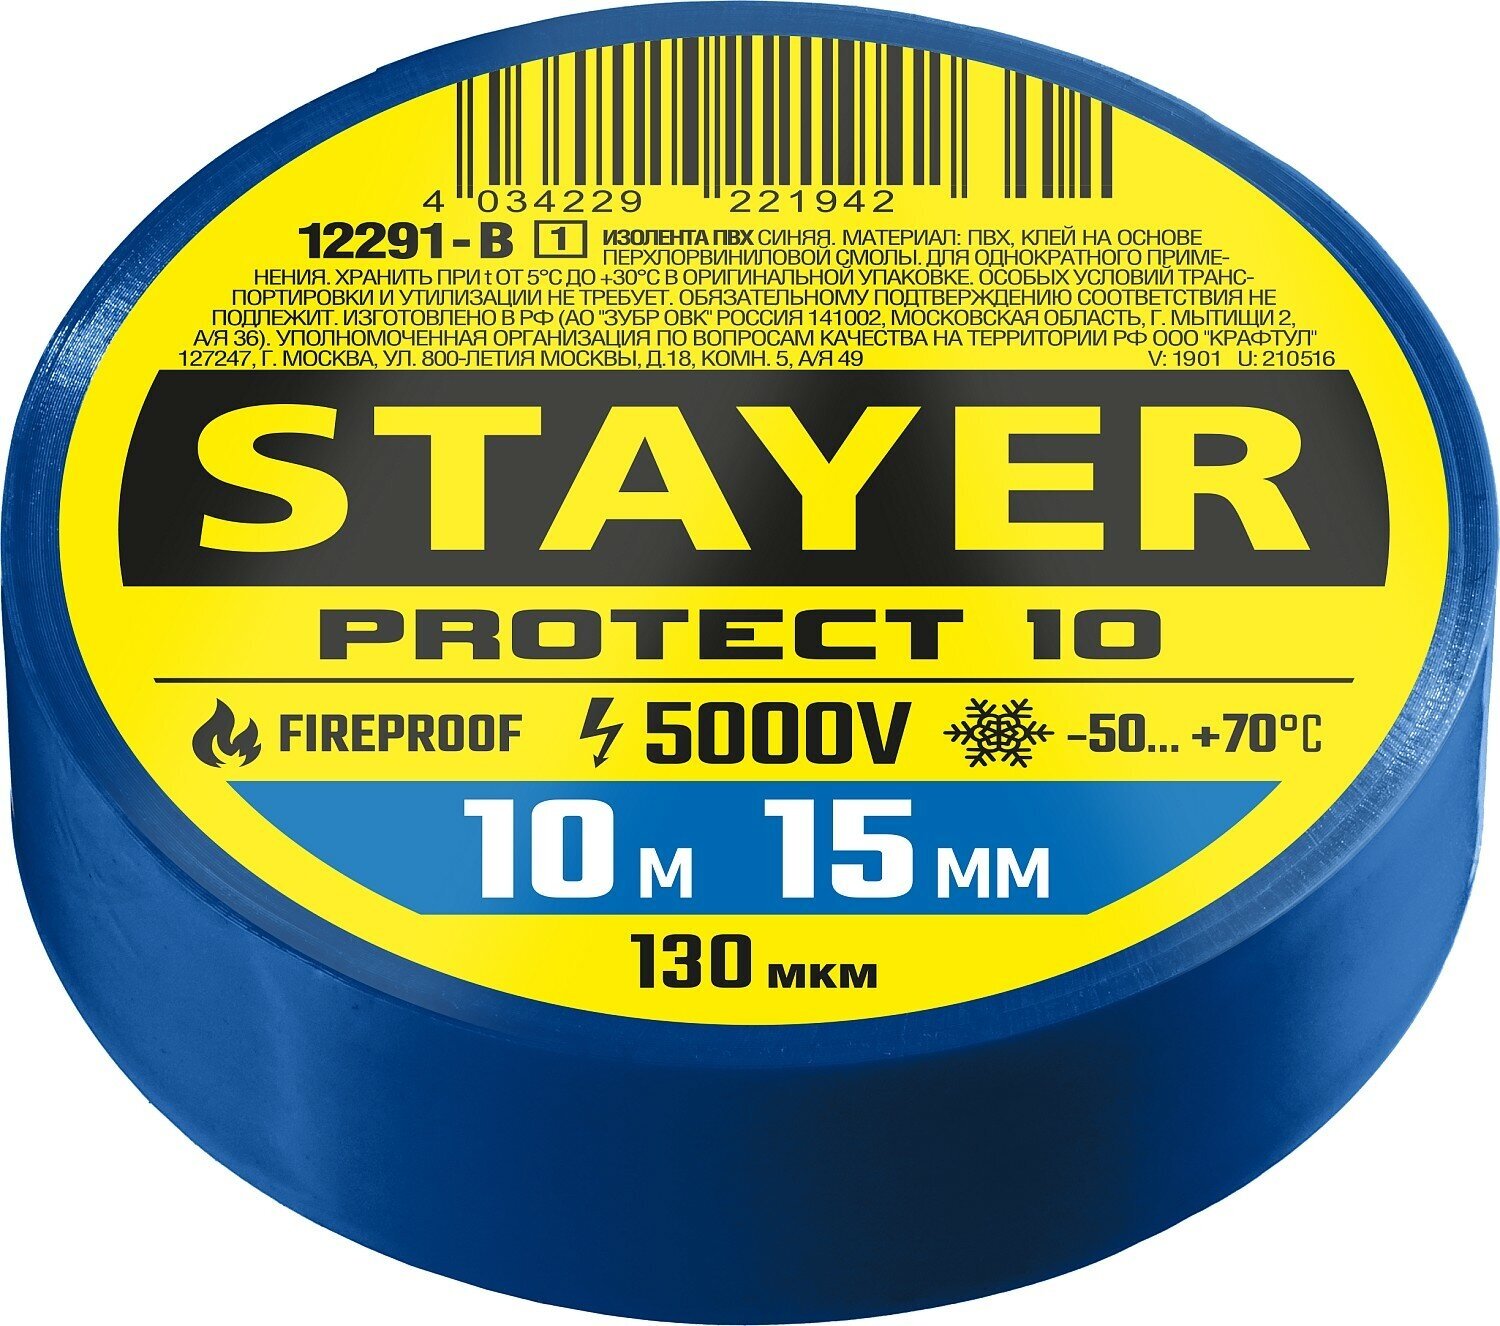 STAYER Protect-10 10м х 15мм 5000В синяя Изоляционная лента ПВХ (12292-B)